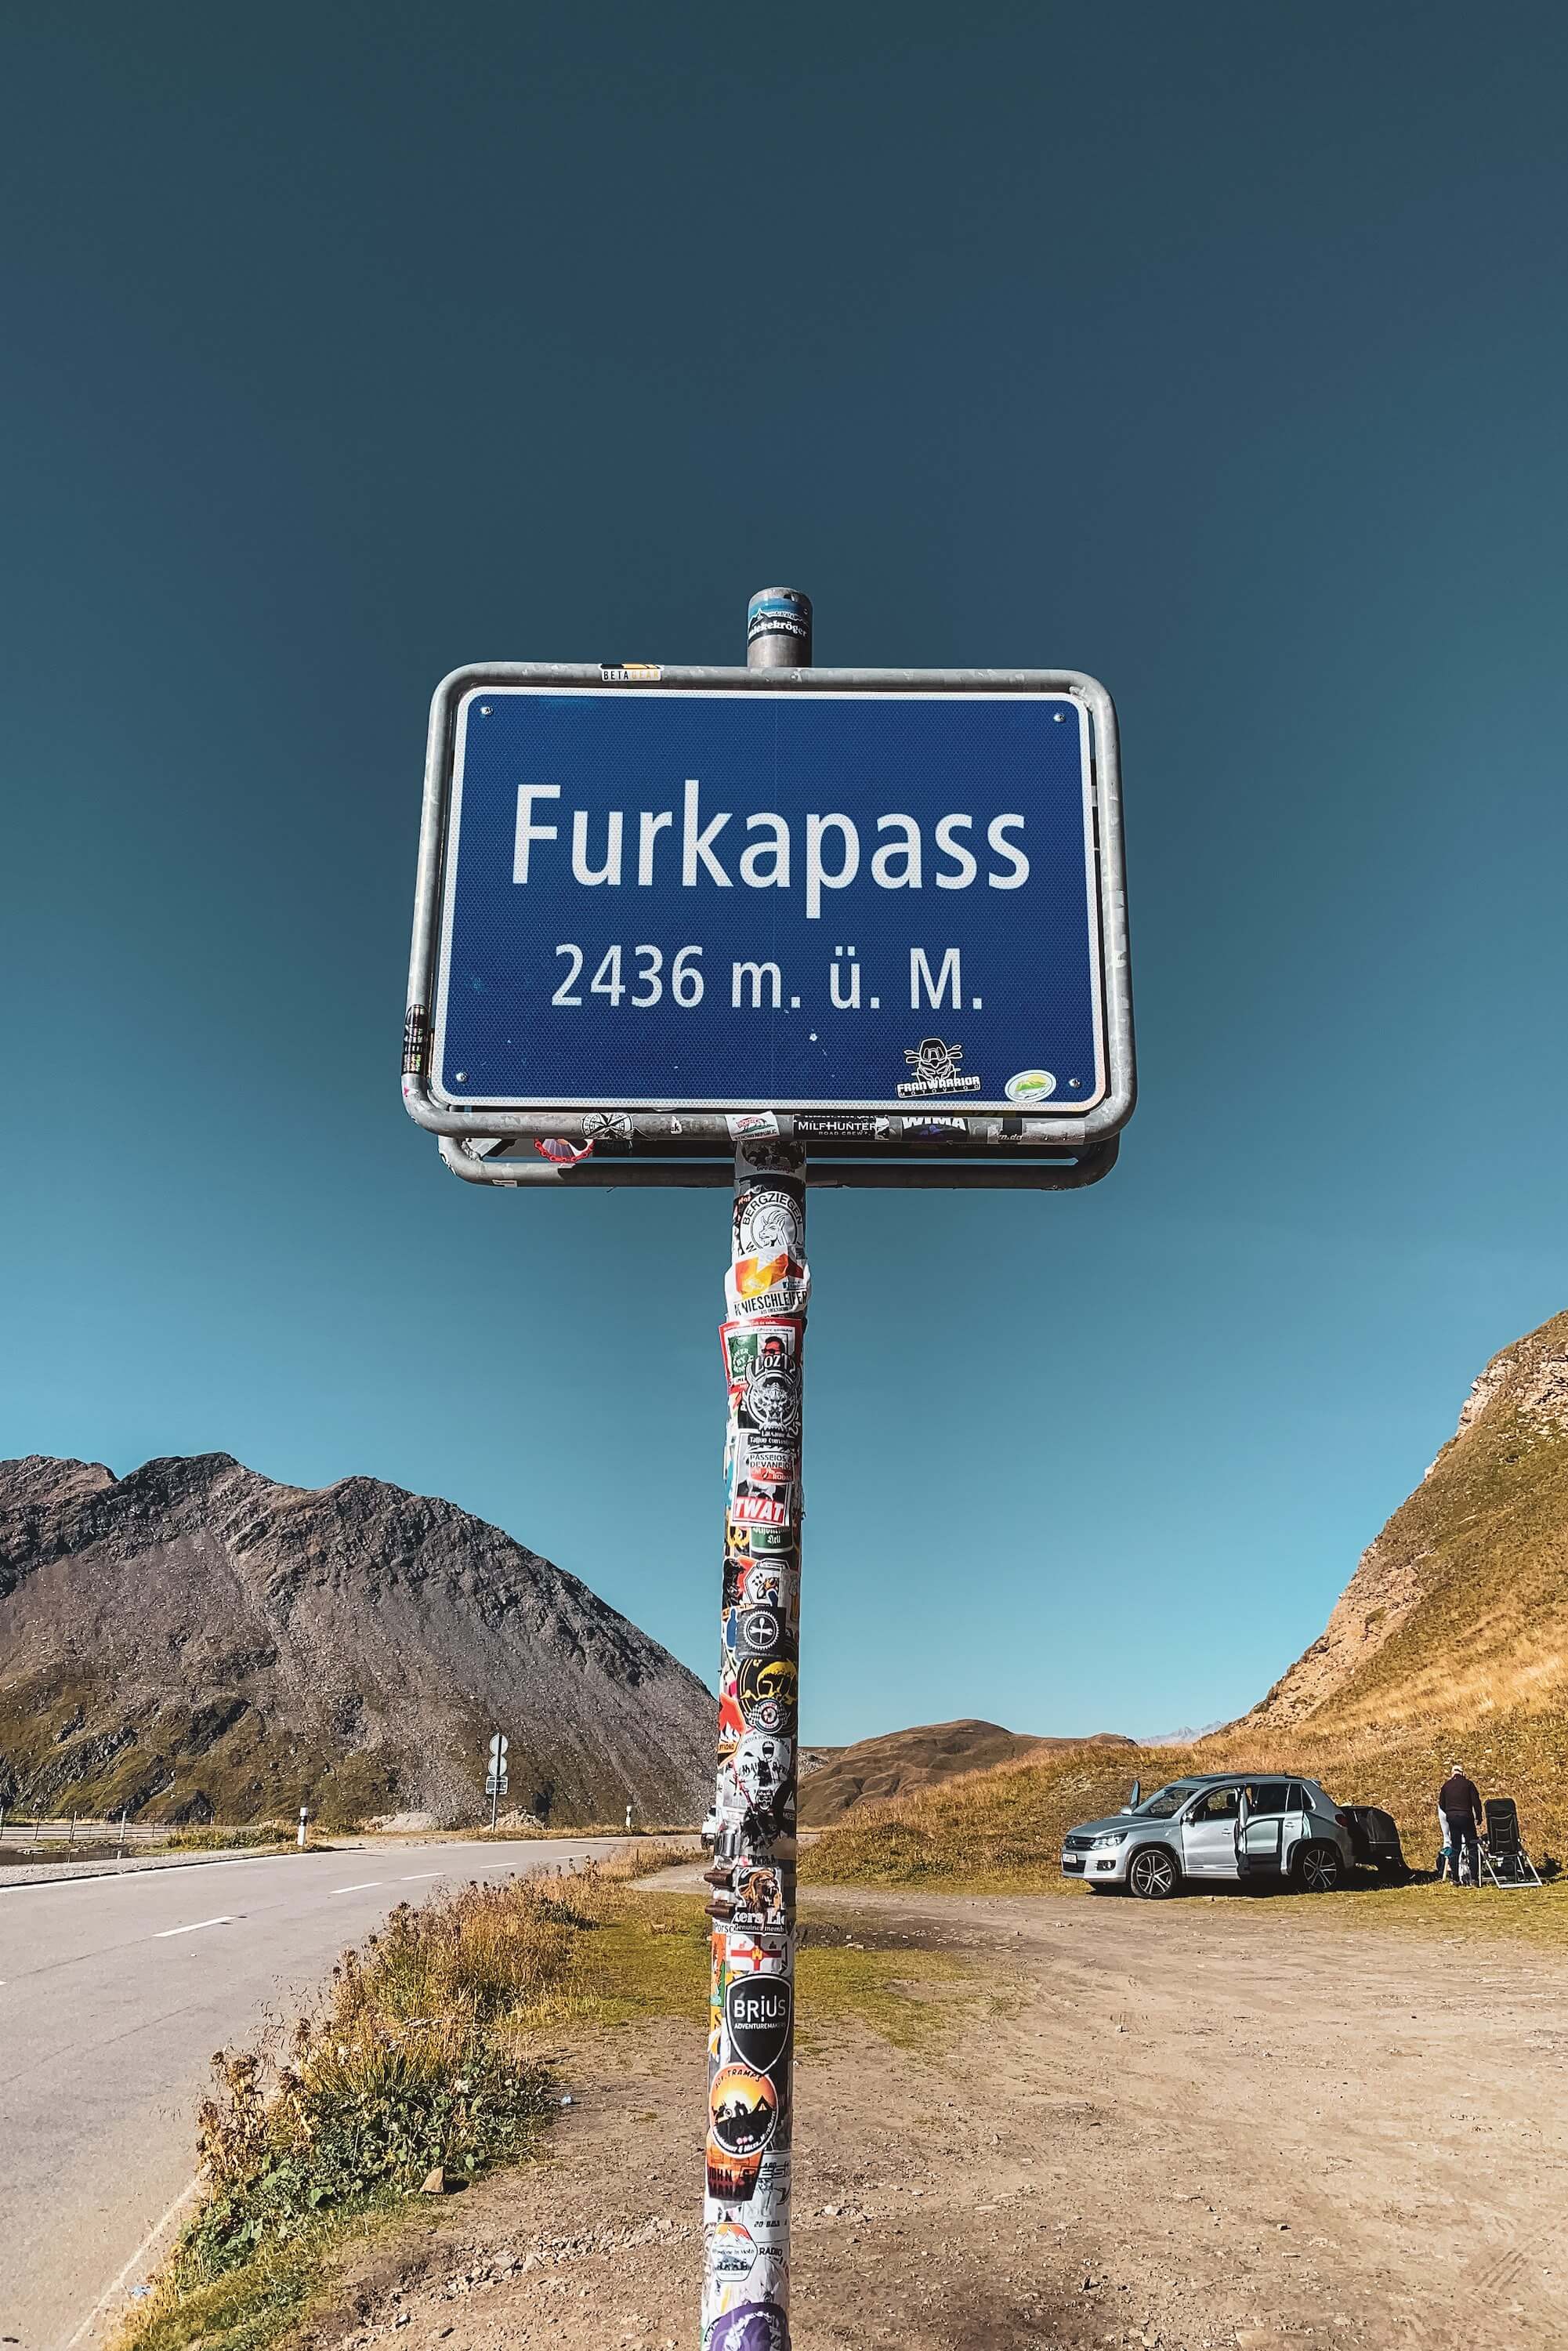 Furka pass sign at the summit